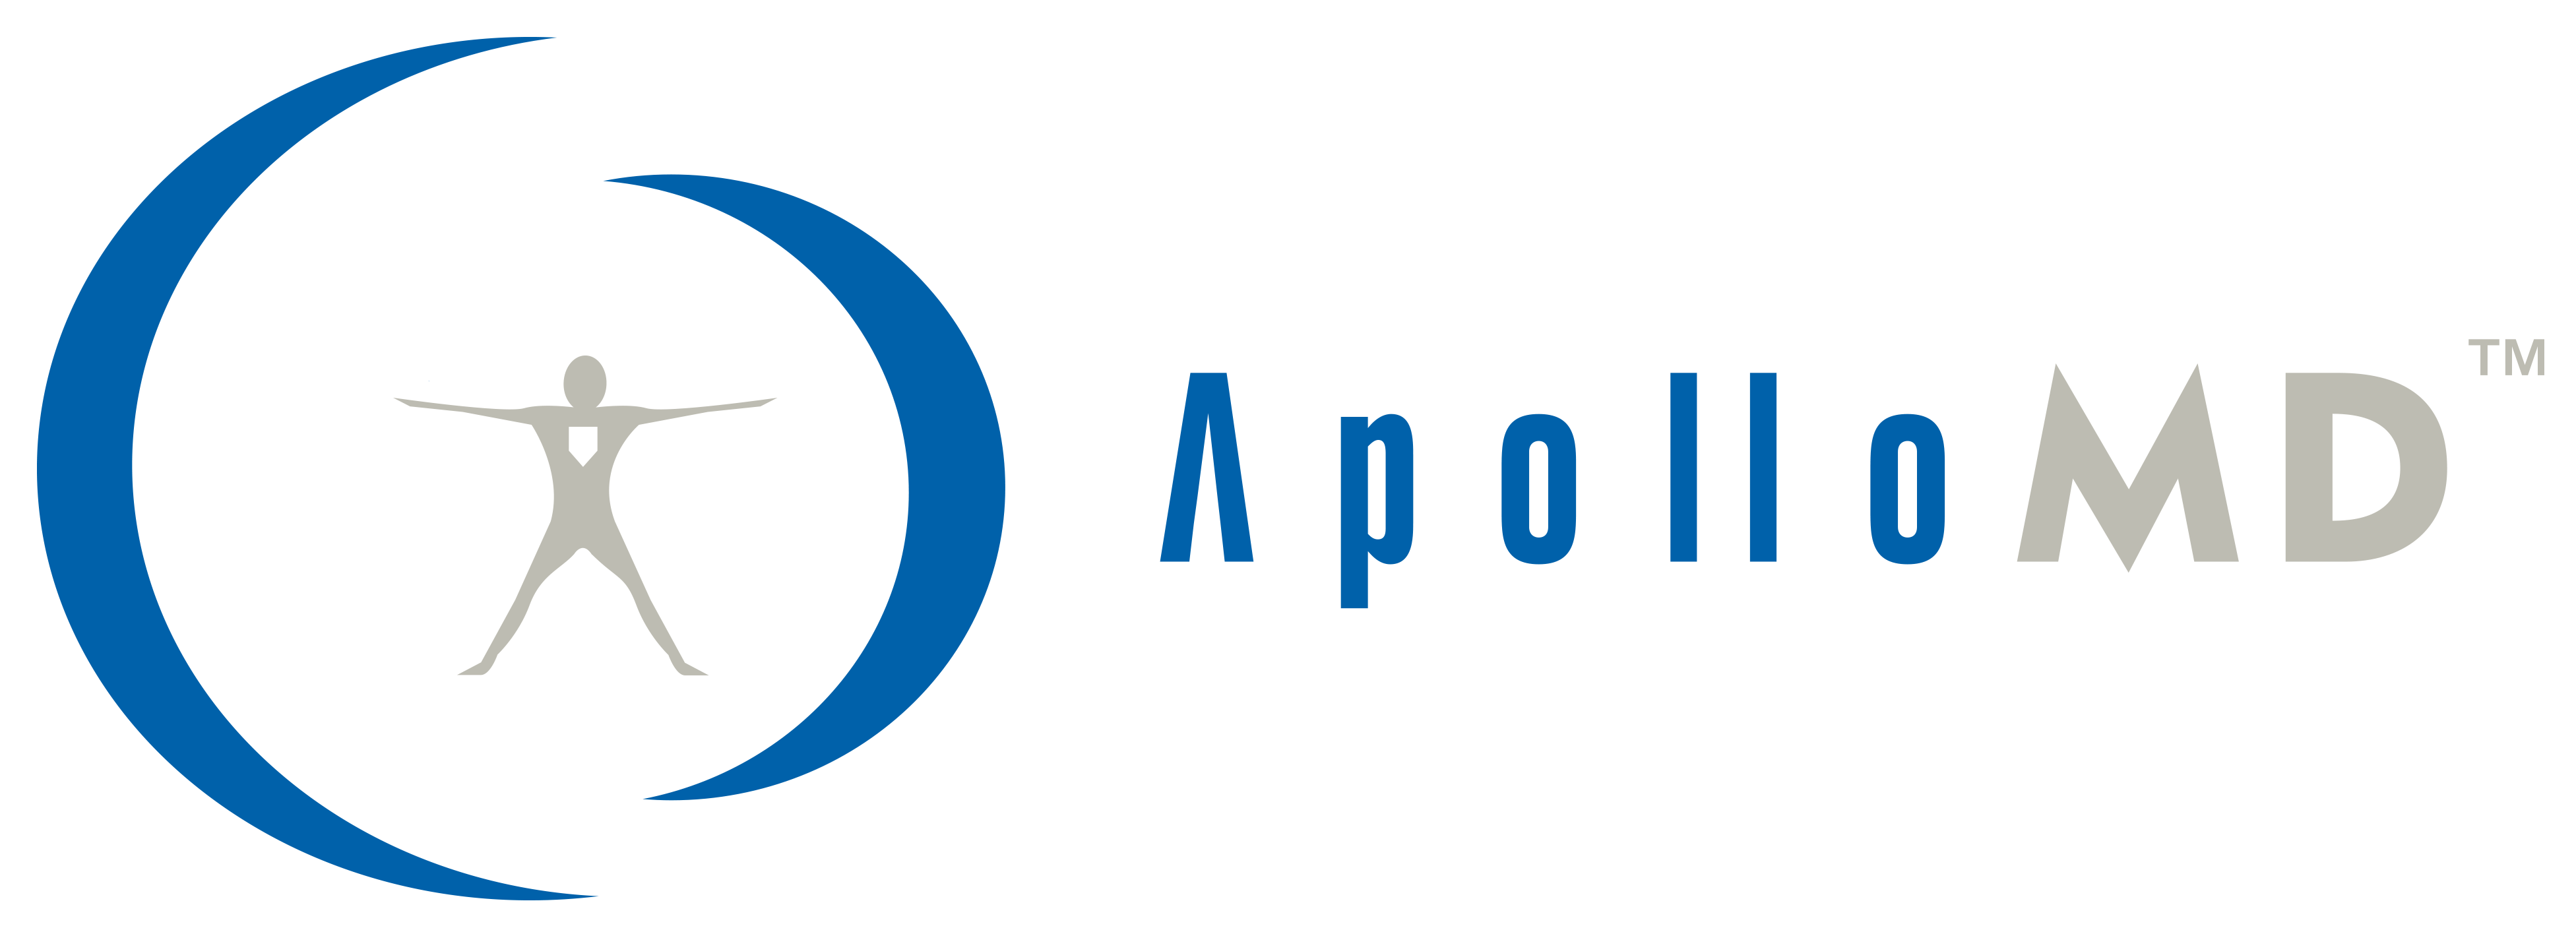 ApolloMD Company Logo